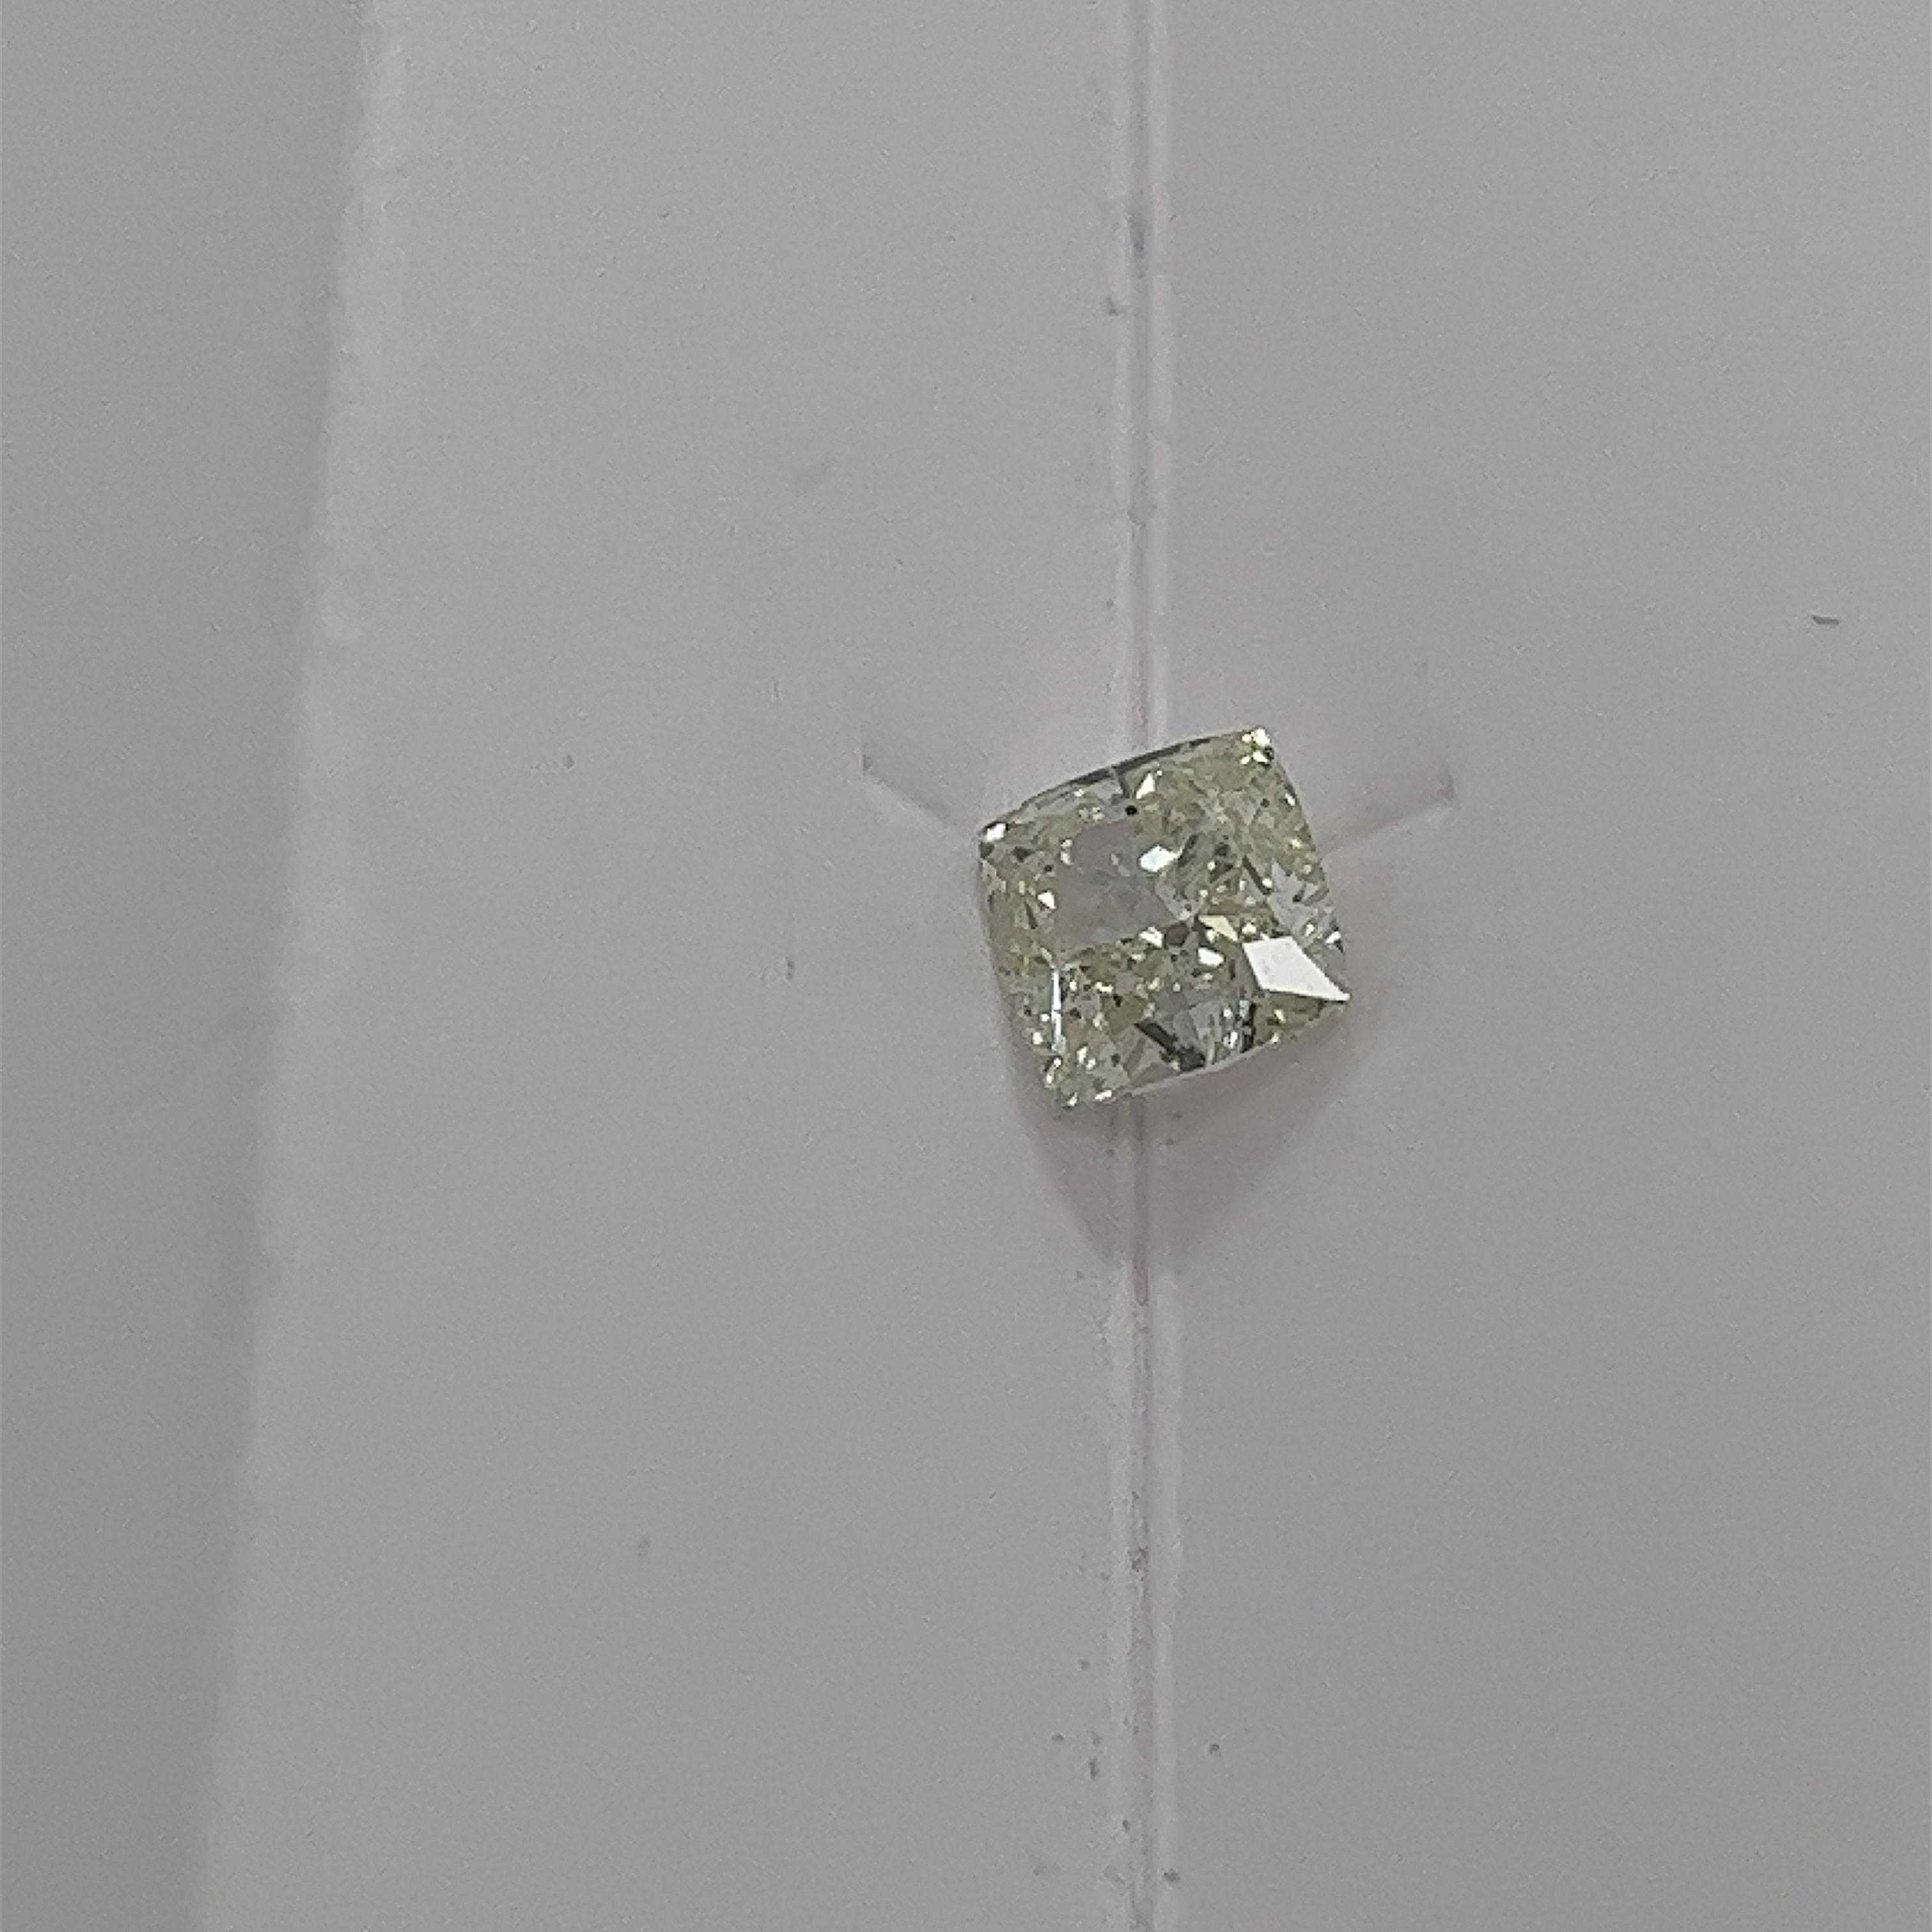 Diamant libre GIA de 1,07ct de couleur naturelle jaune clair vert.
Poids total des diamants : 1,07ct 
Couleur du diamant : jaune clair vert
Clarté du diamant : SI2
SMS9234